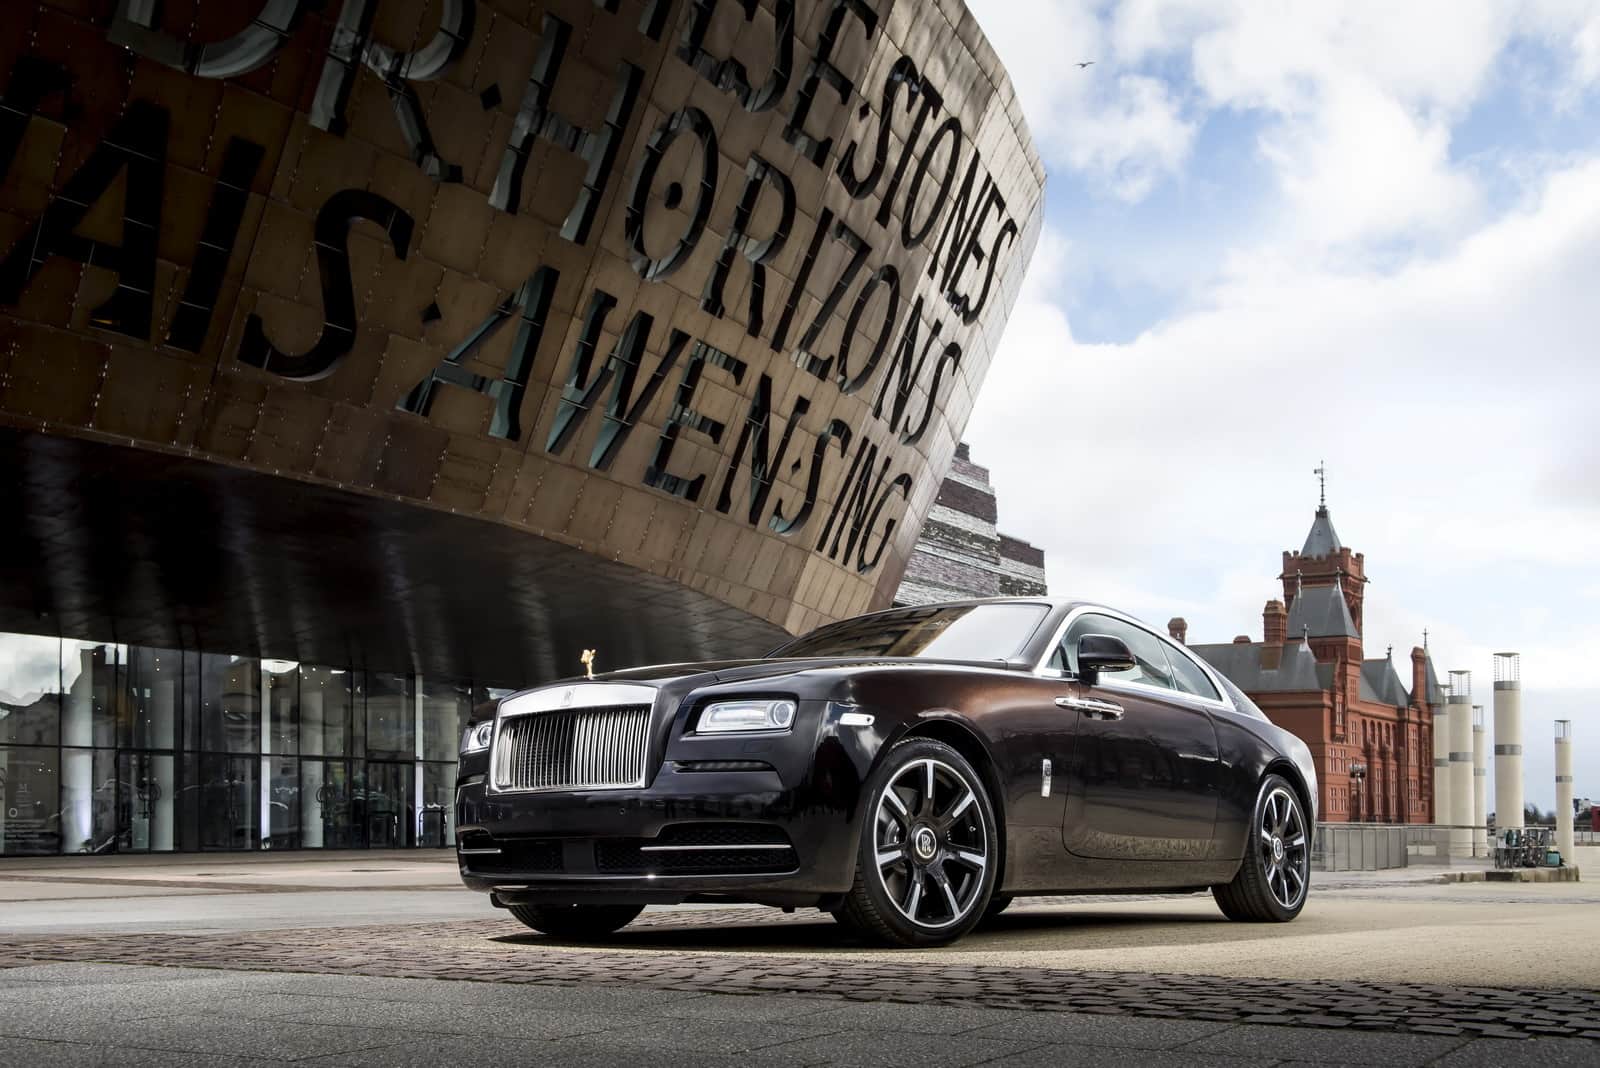 Πωλήσεις ρεκόρ αυτοκινήτων Rolls-Royce στη Βρετανία παρά την κρίση του κόστους ζωής